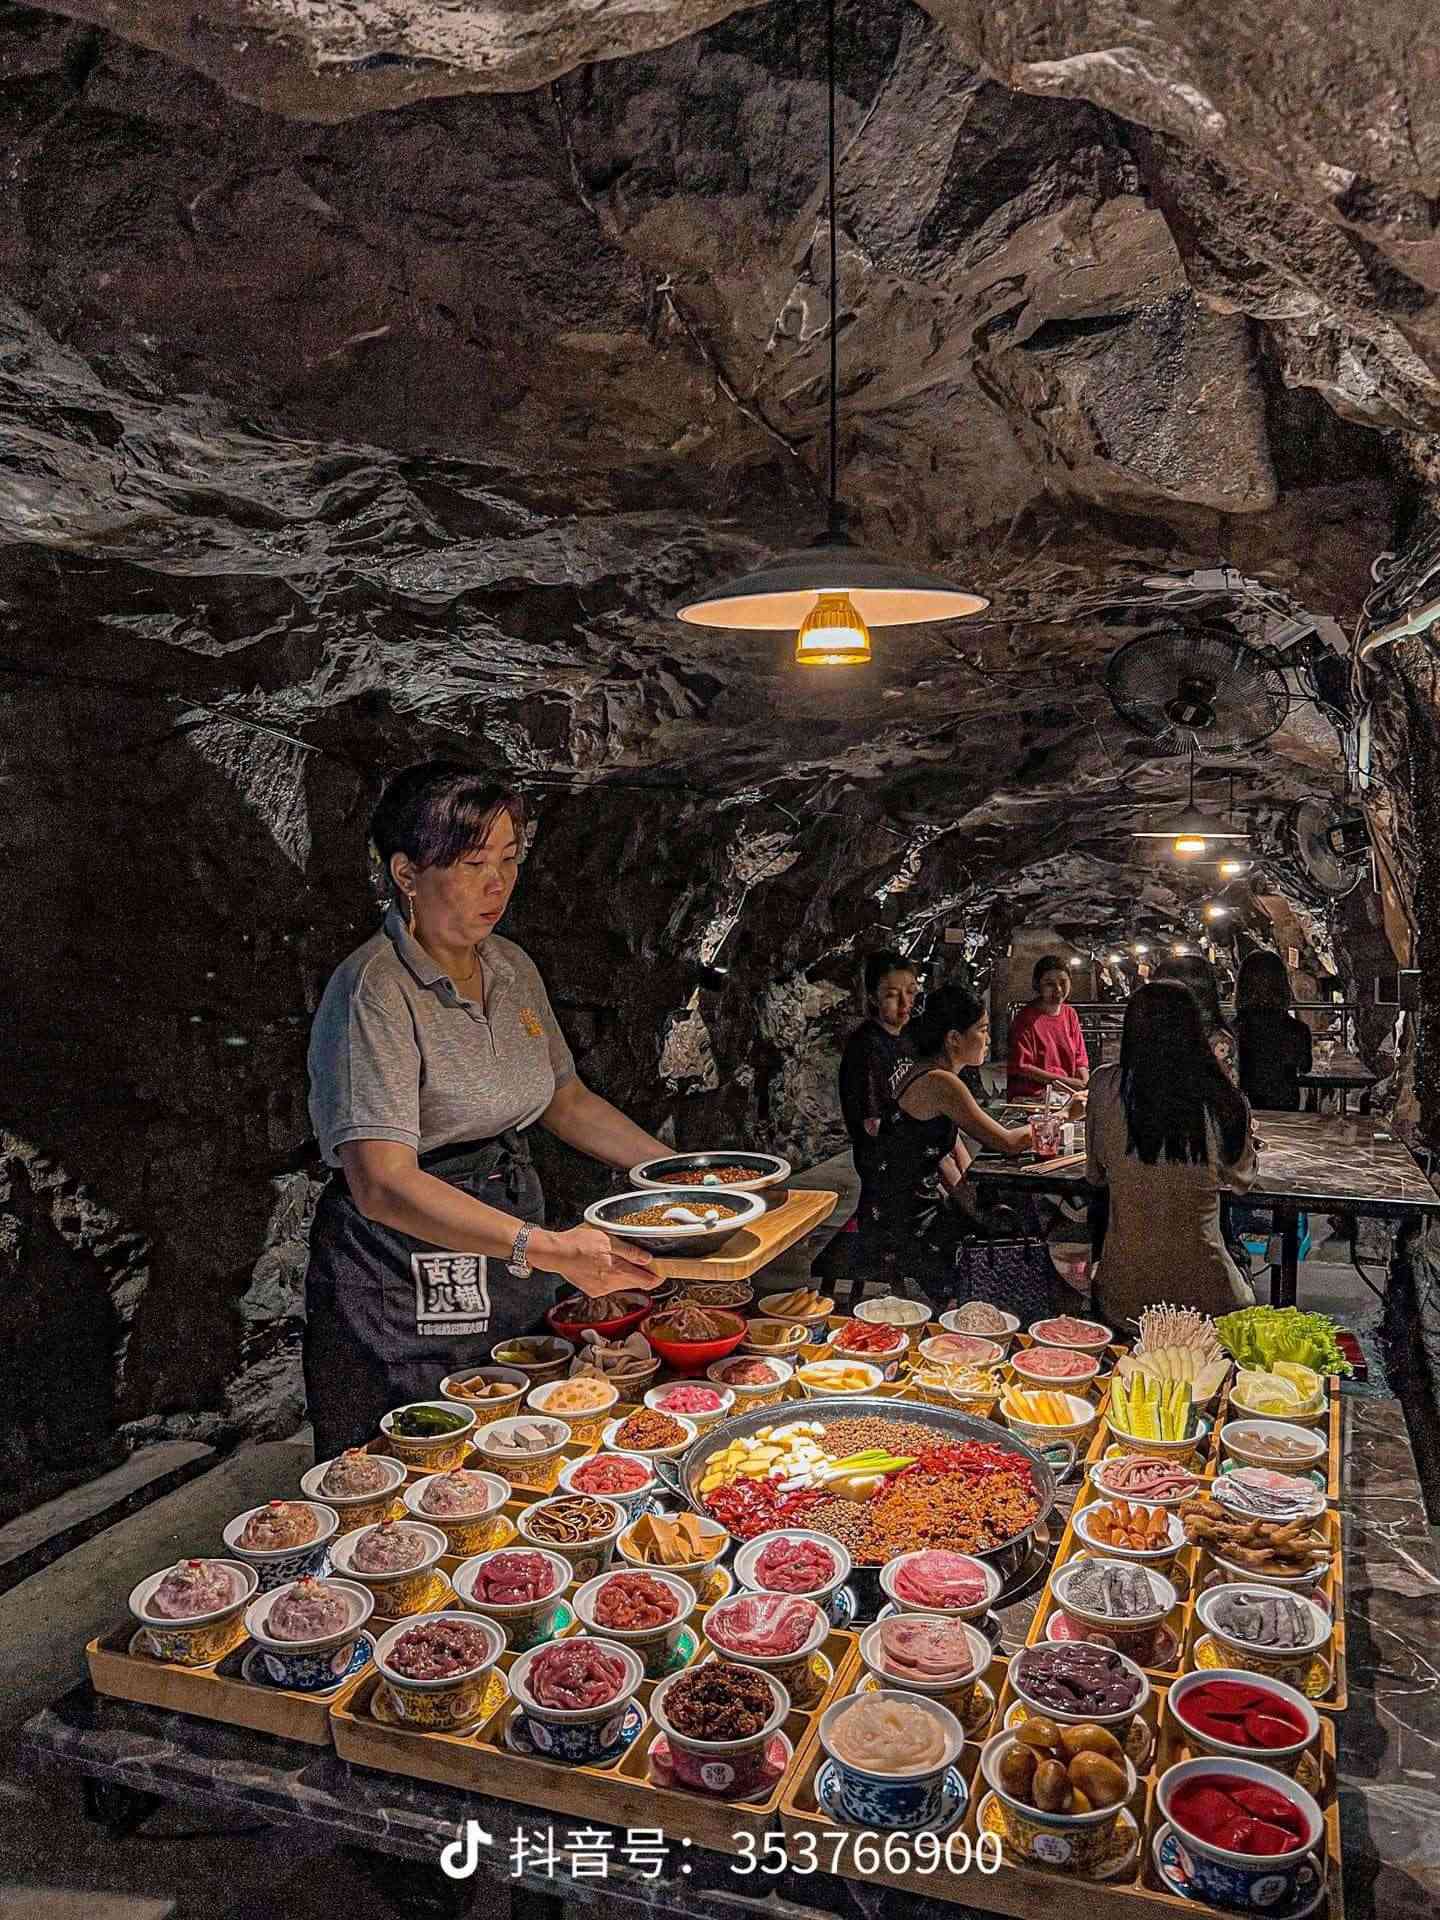 Nhà hàng lẩu dưới hầm trú ẩn ở Trùng Khánh - Trung Quốc